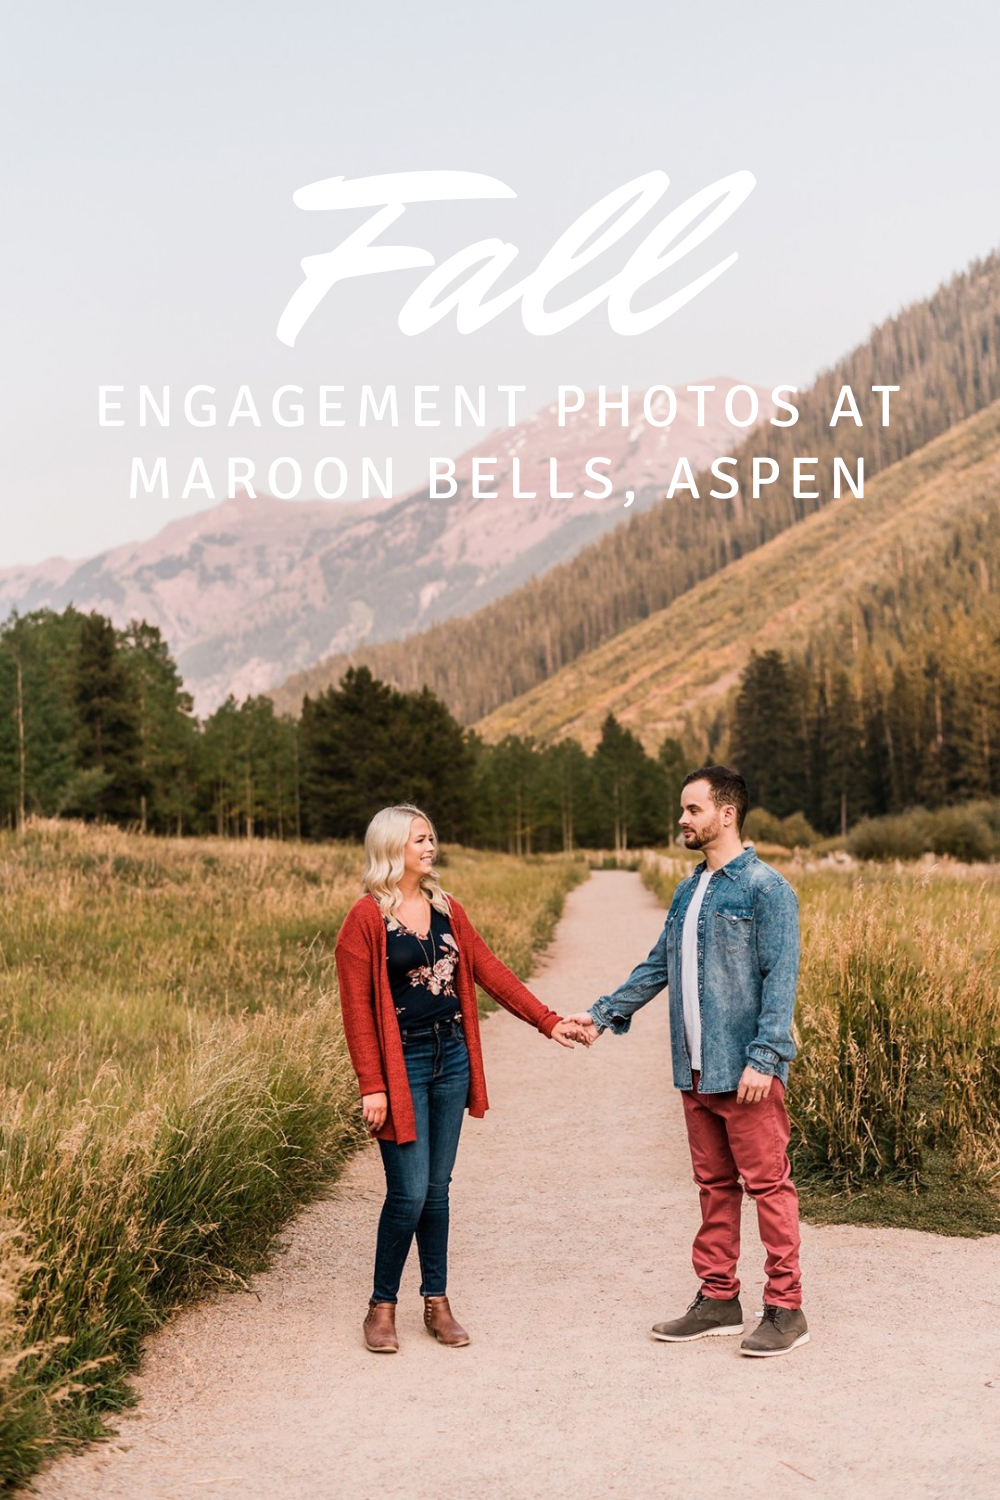 Morgan & Nick | Fall Engagement Photos at Maroon Bells